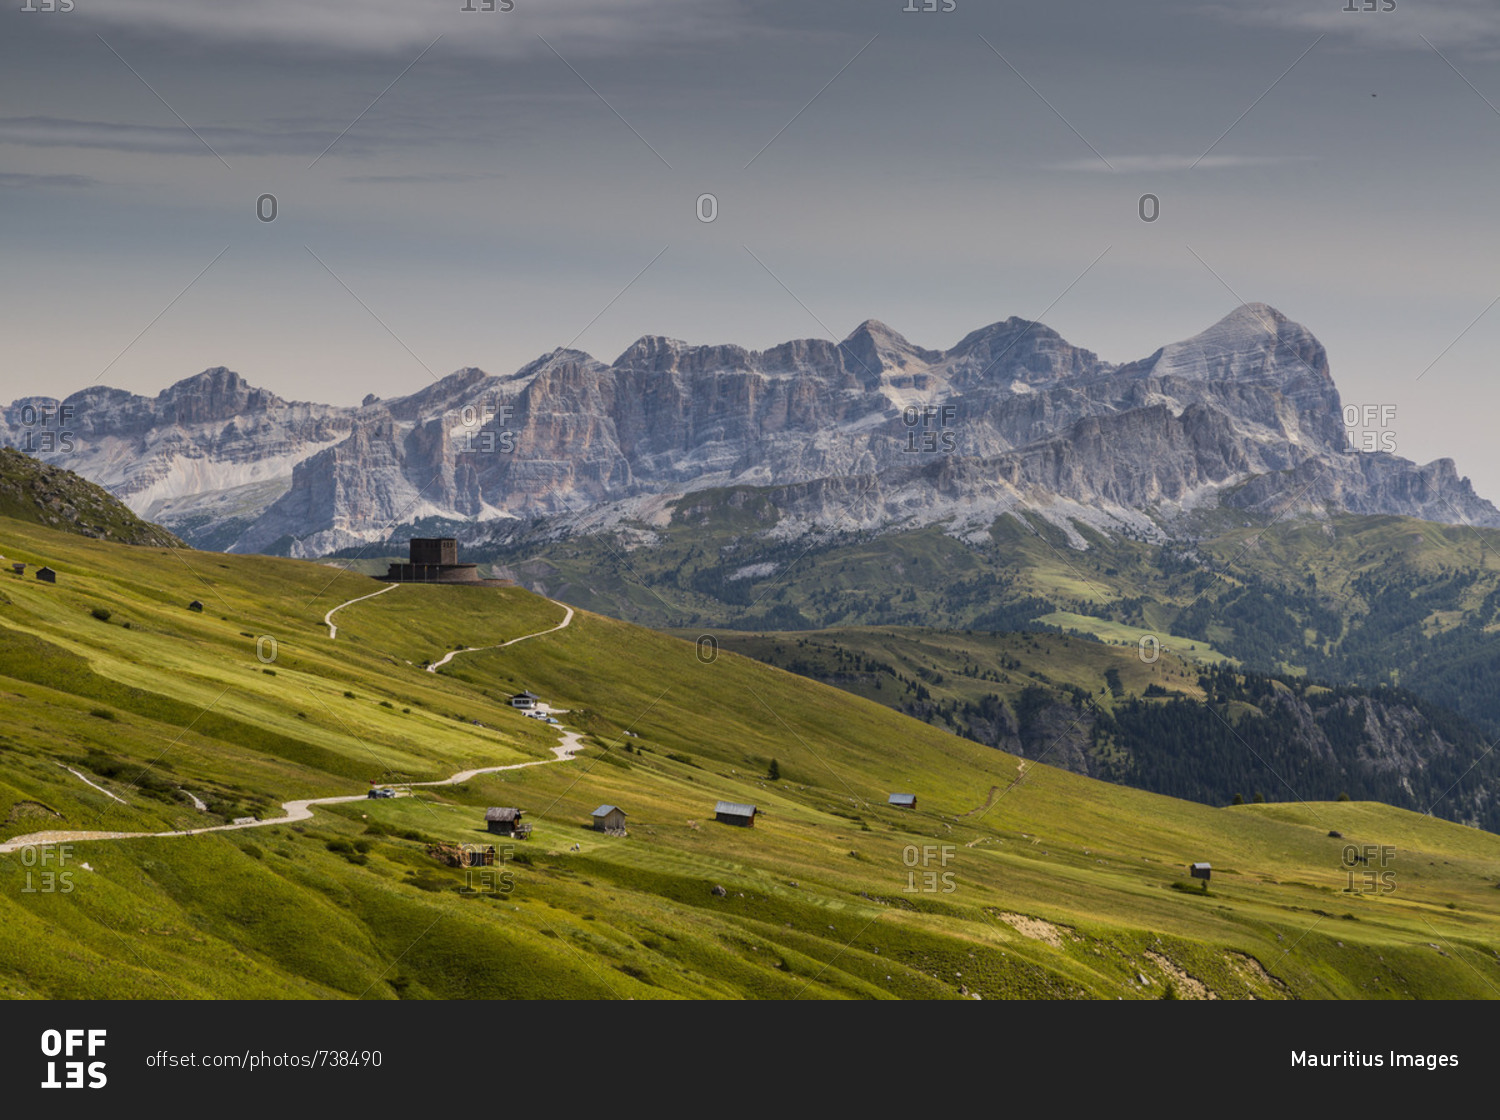 Europe, Italy, Alps, Dolomites, Mountains, Pordoi Pass